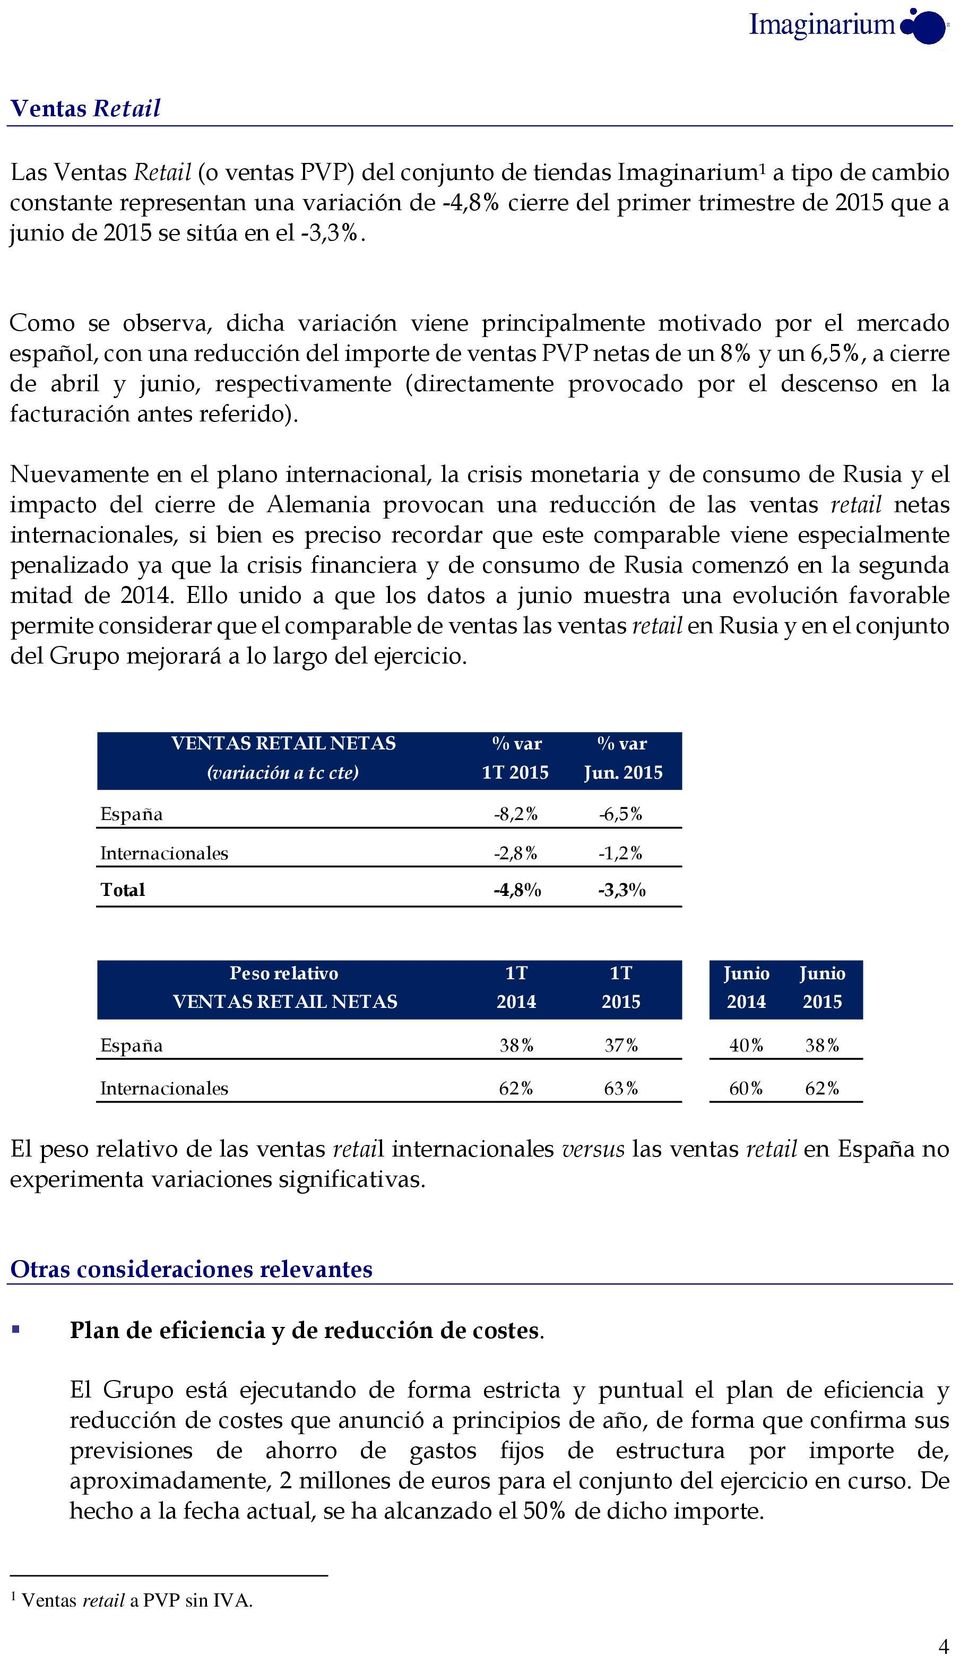 Como se observa, dicha iación viene principalmente motivado por el mercado español, con una reducción del importe de ventas PVP netas de un 8% y un 6,5%, a cierre de abril y junio, respectivamente